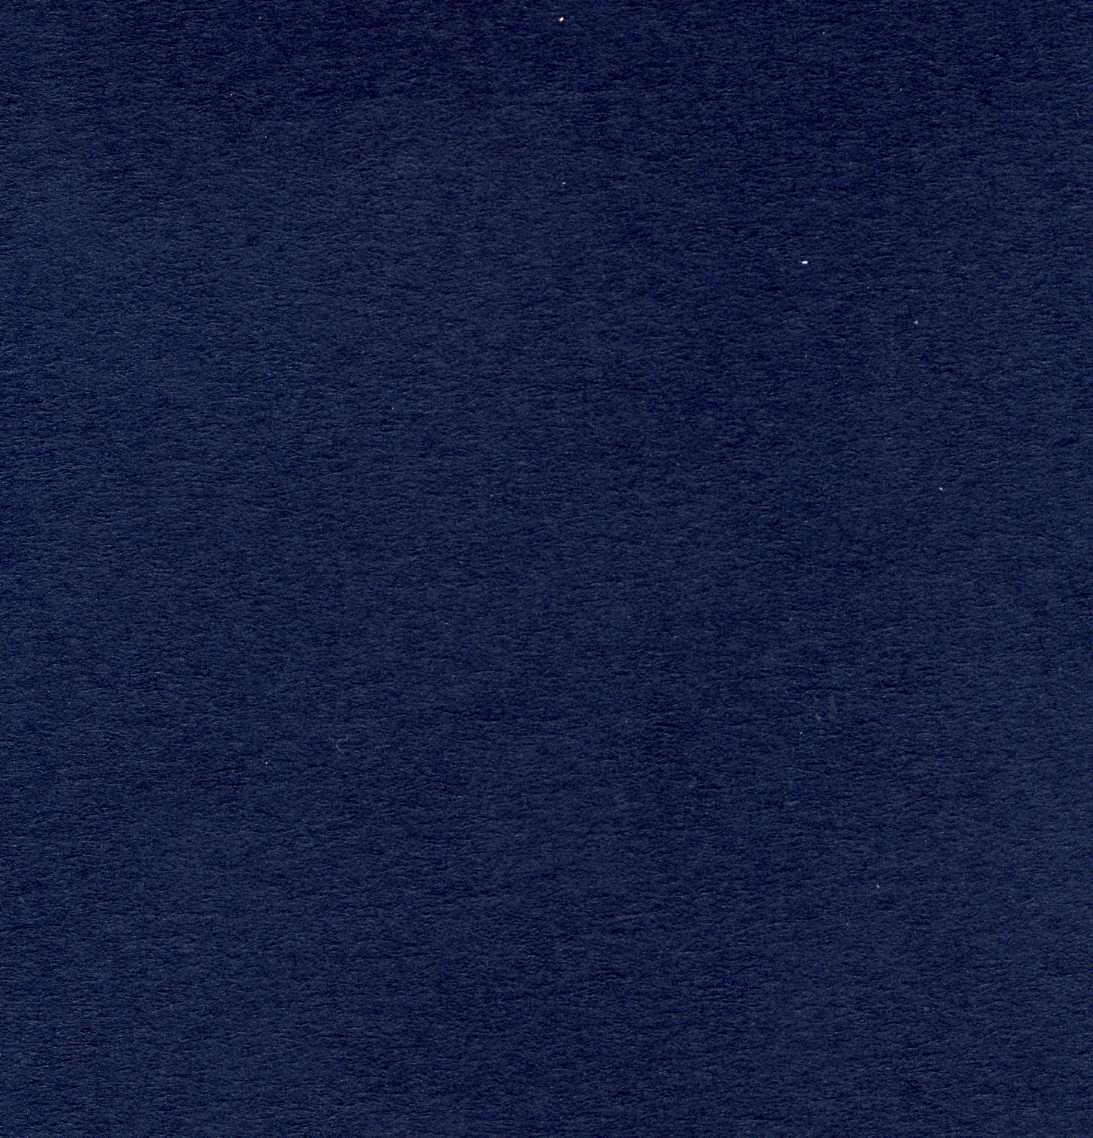 Card A4 - Blue (Navy) - 300gsm